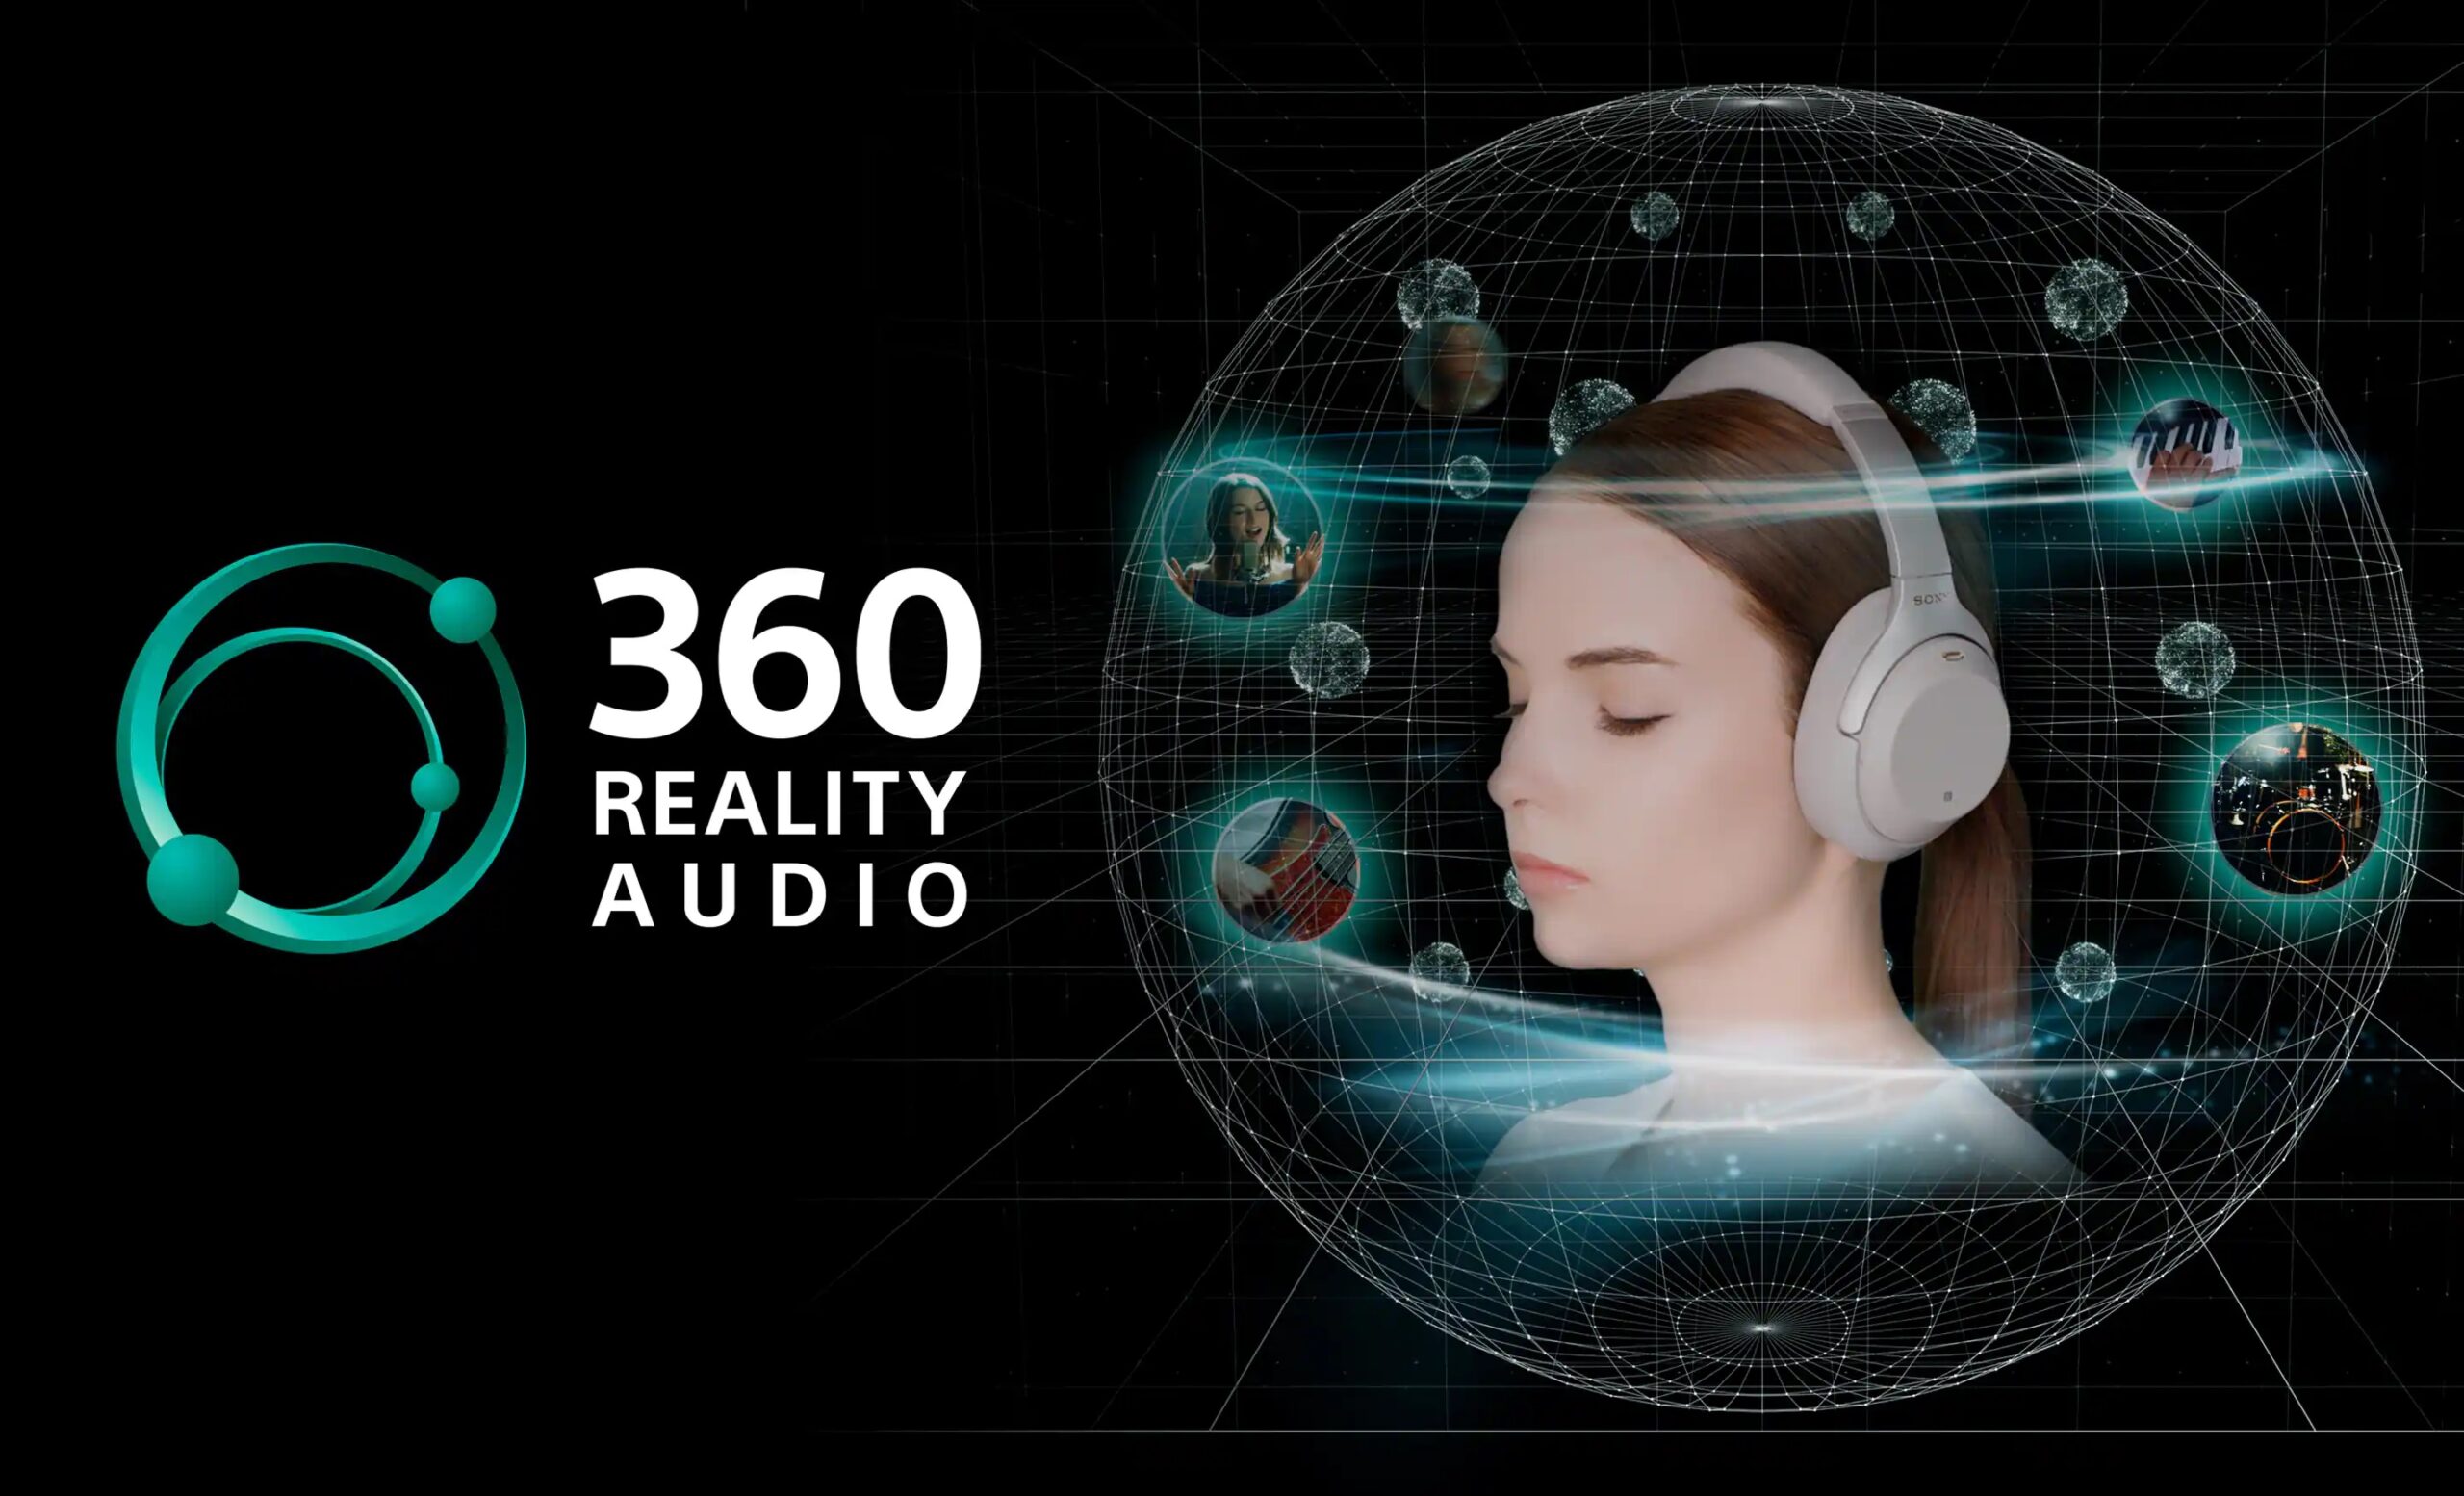 نقد و بررسی کامل و جامع سرویس دیزر پریمیوم - قابلیت 360 Reality Audio